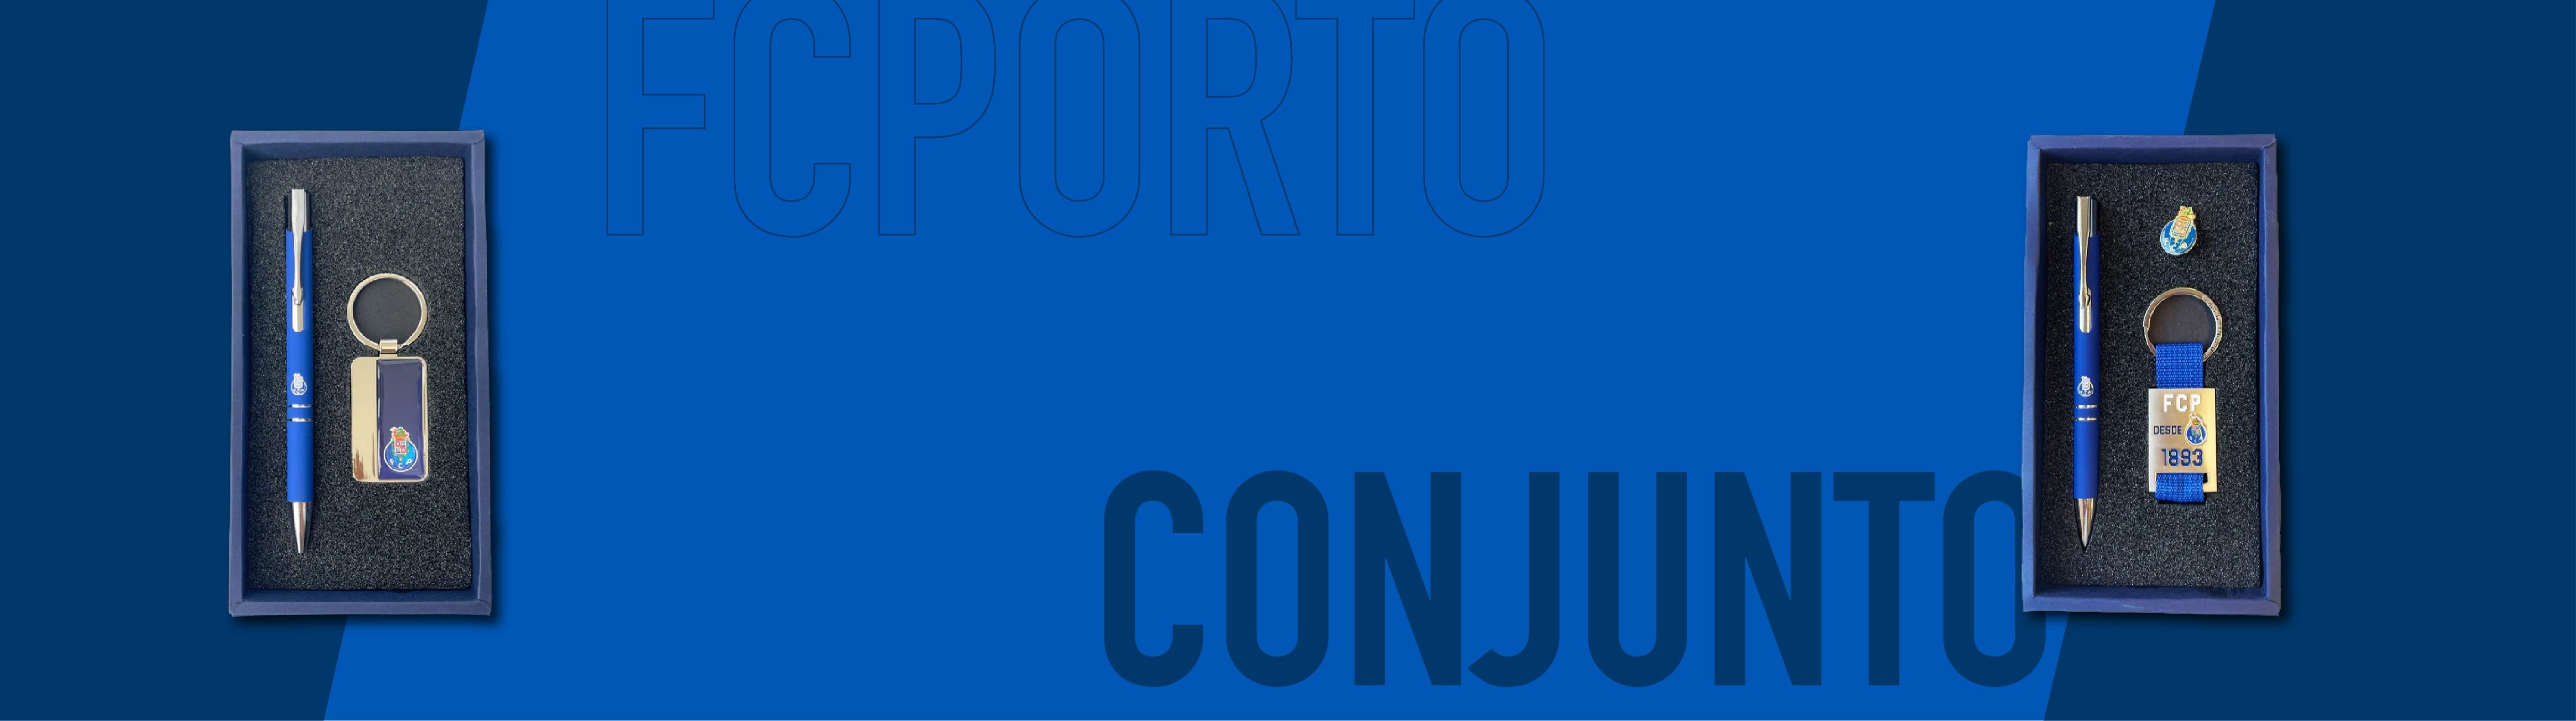 FC PORTO - CONJUNTOS